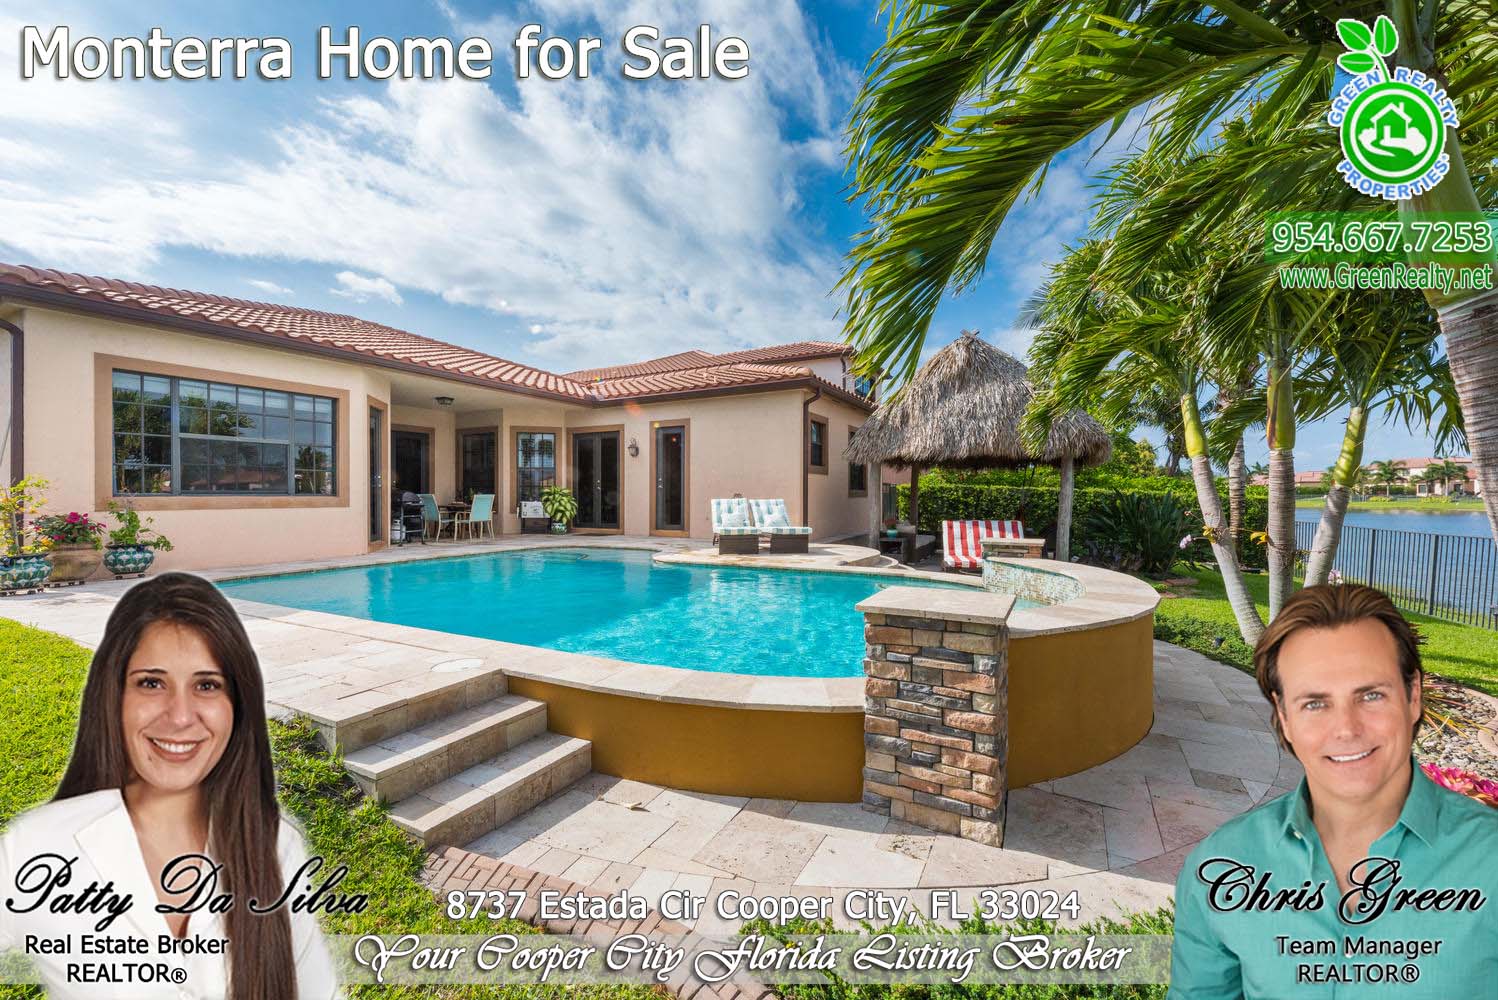 25 Monterra Home For Sale Patty Da Silva Broker